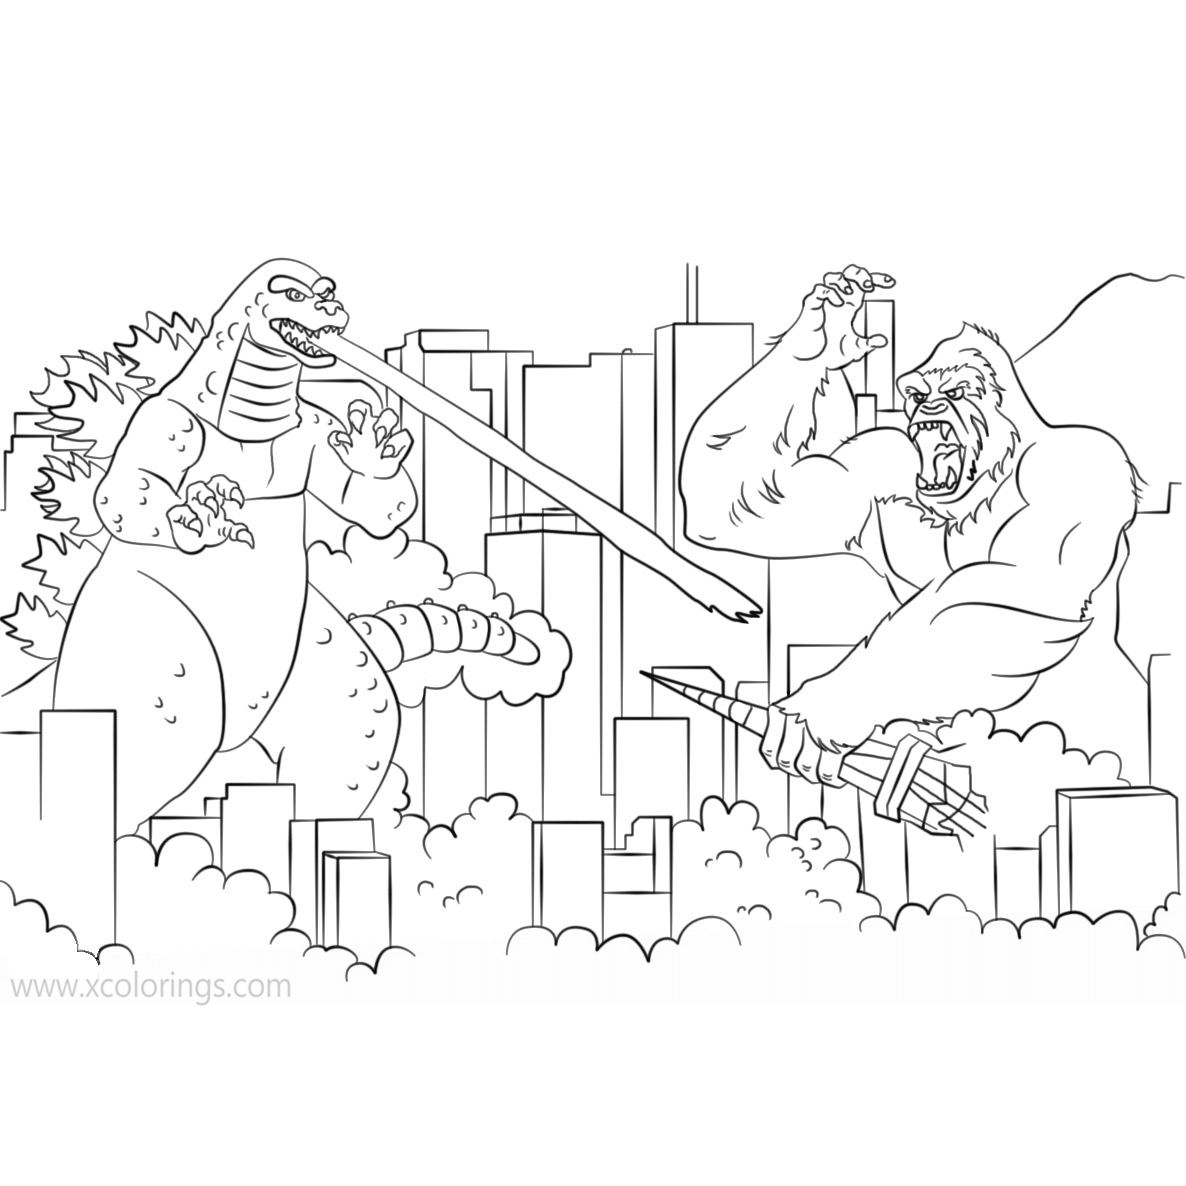 Godzilla Vs Kong Coloring Pages  Godzilla and King Kong coloring page ...